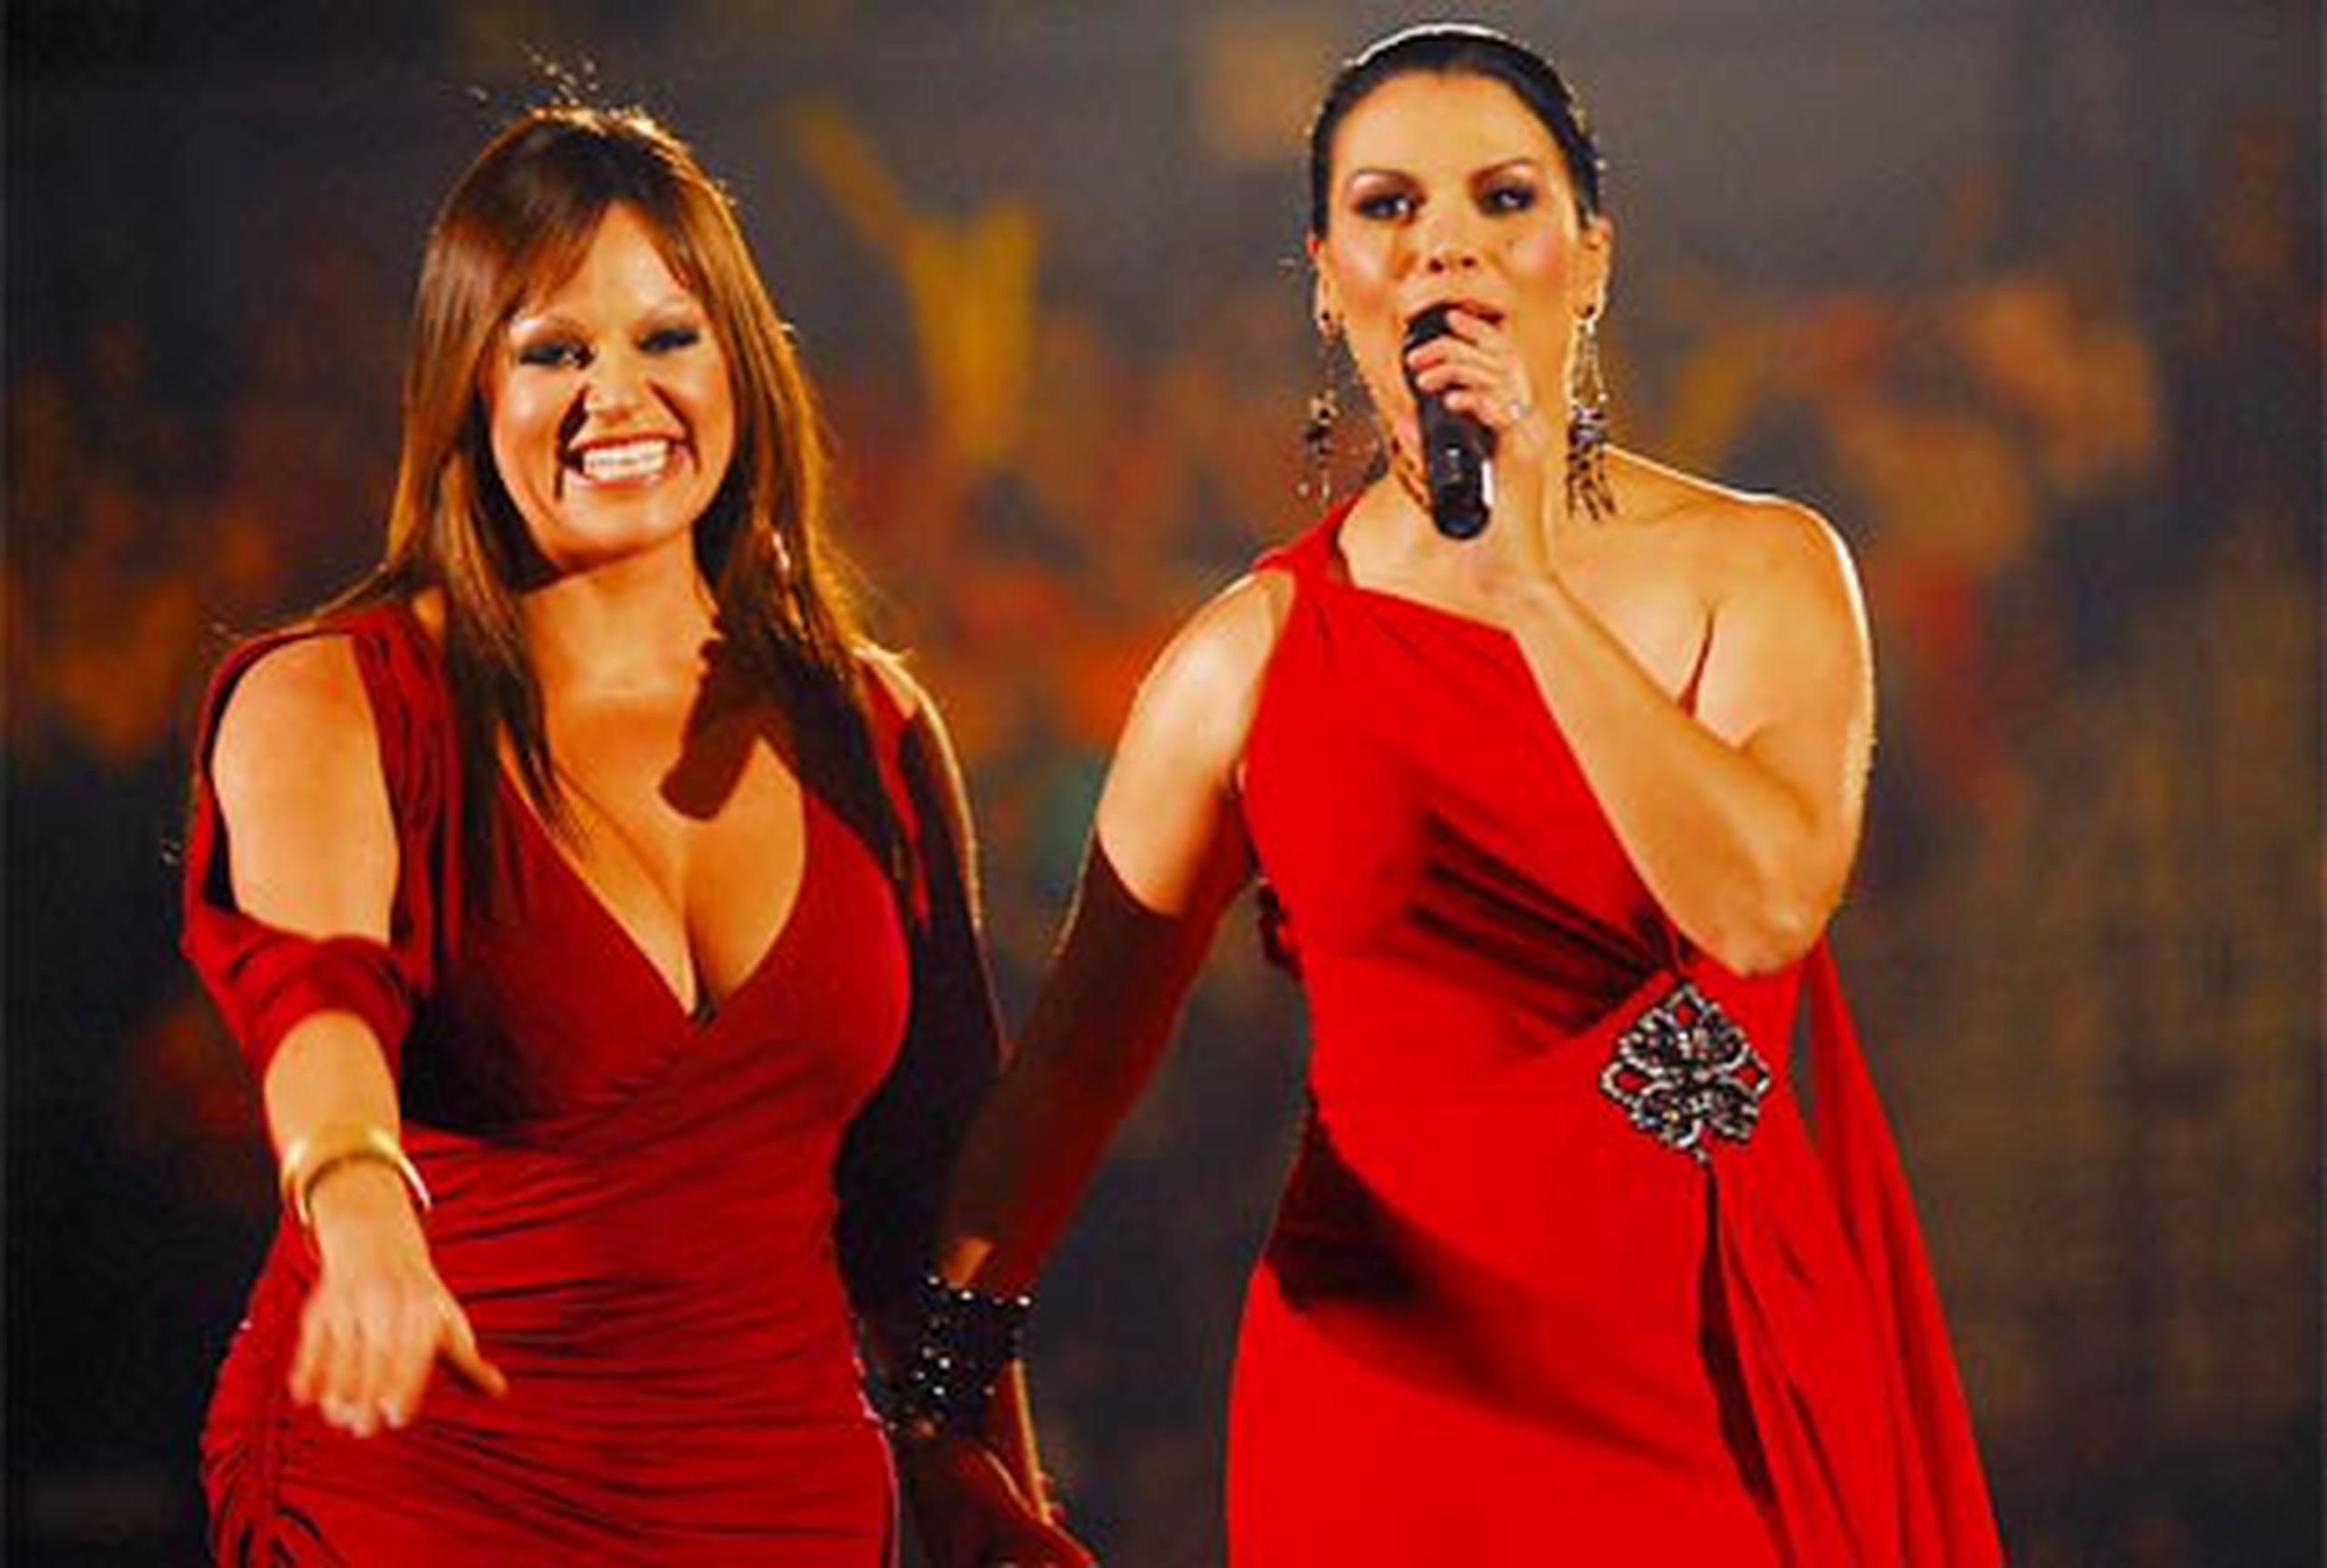 En el 2008, Jenni Rivera visitó por primera vez Puerto Rico como artista invitada del concierto Evolución Tour de Olga Tañón. (Archivo/Primera Hora)